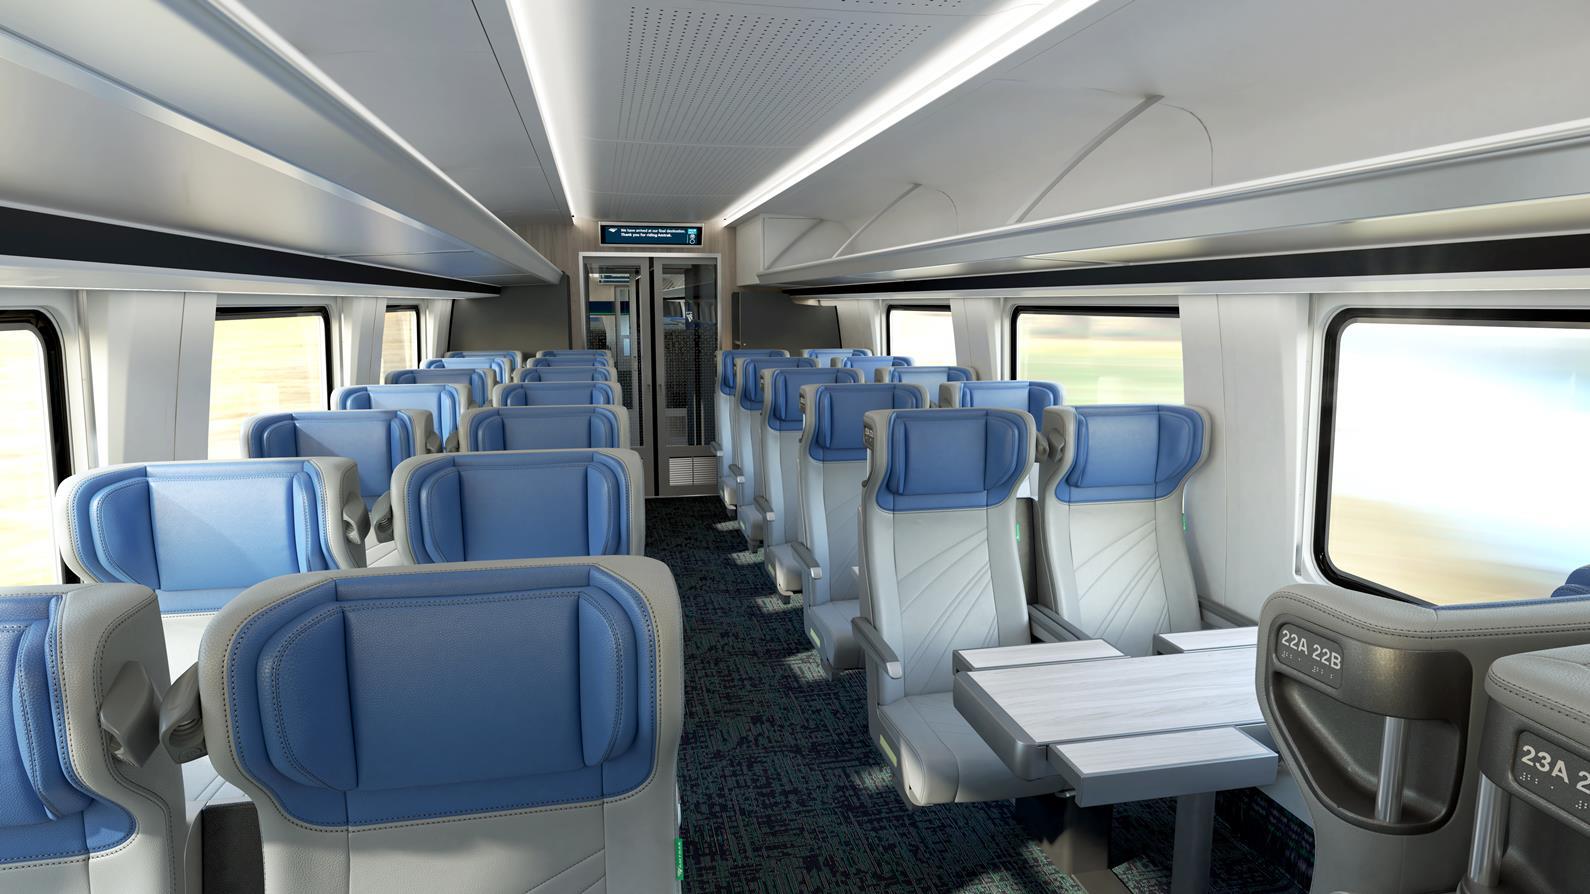 A standard másodosztályon is megfelelő kényelmet élvezhetnek majd az utasok